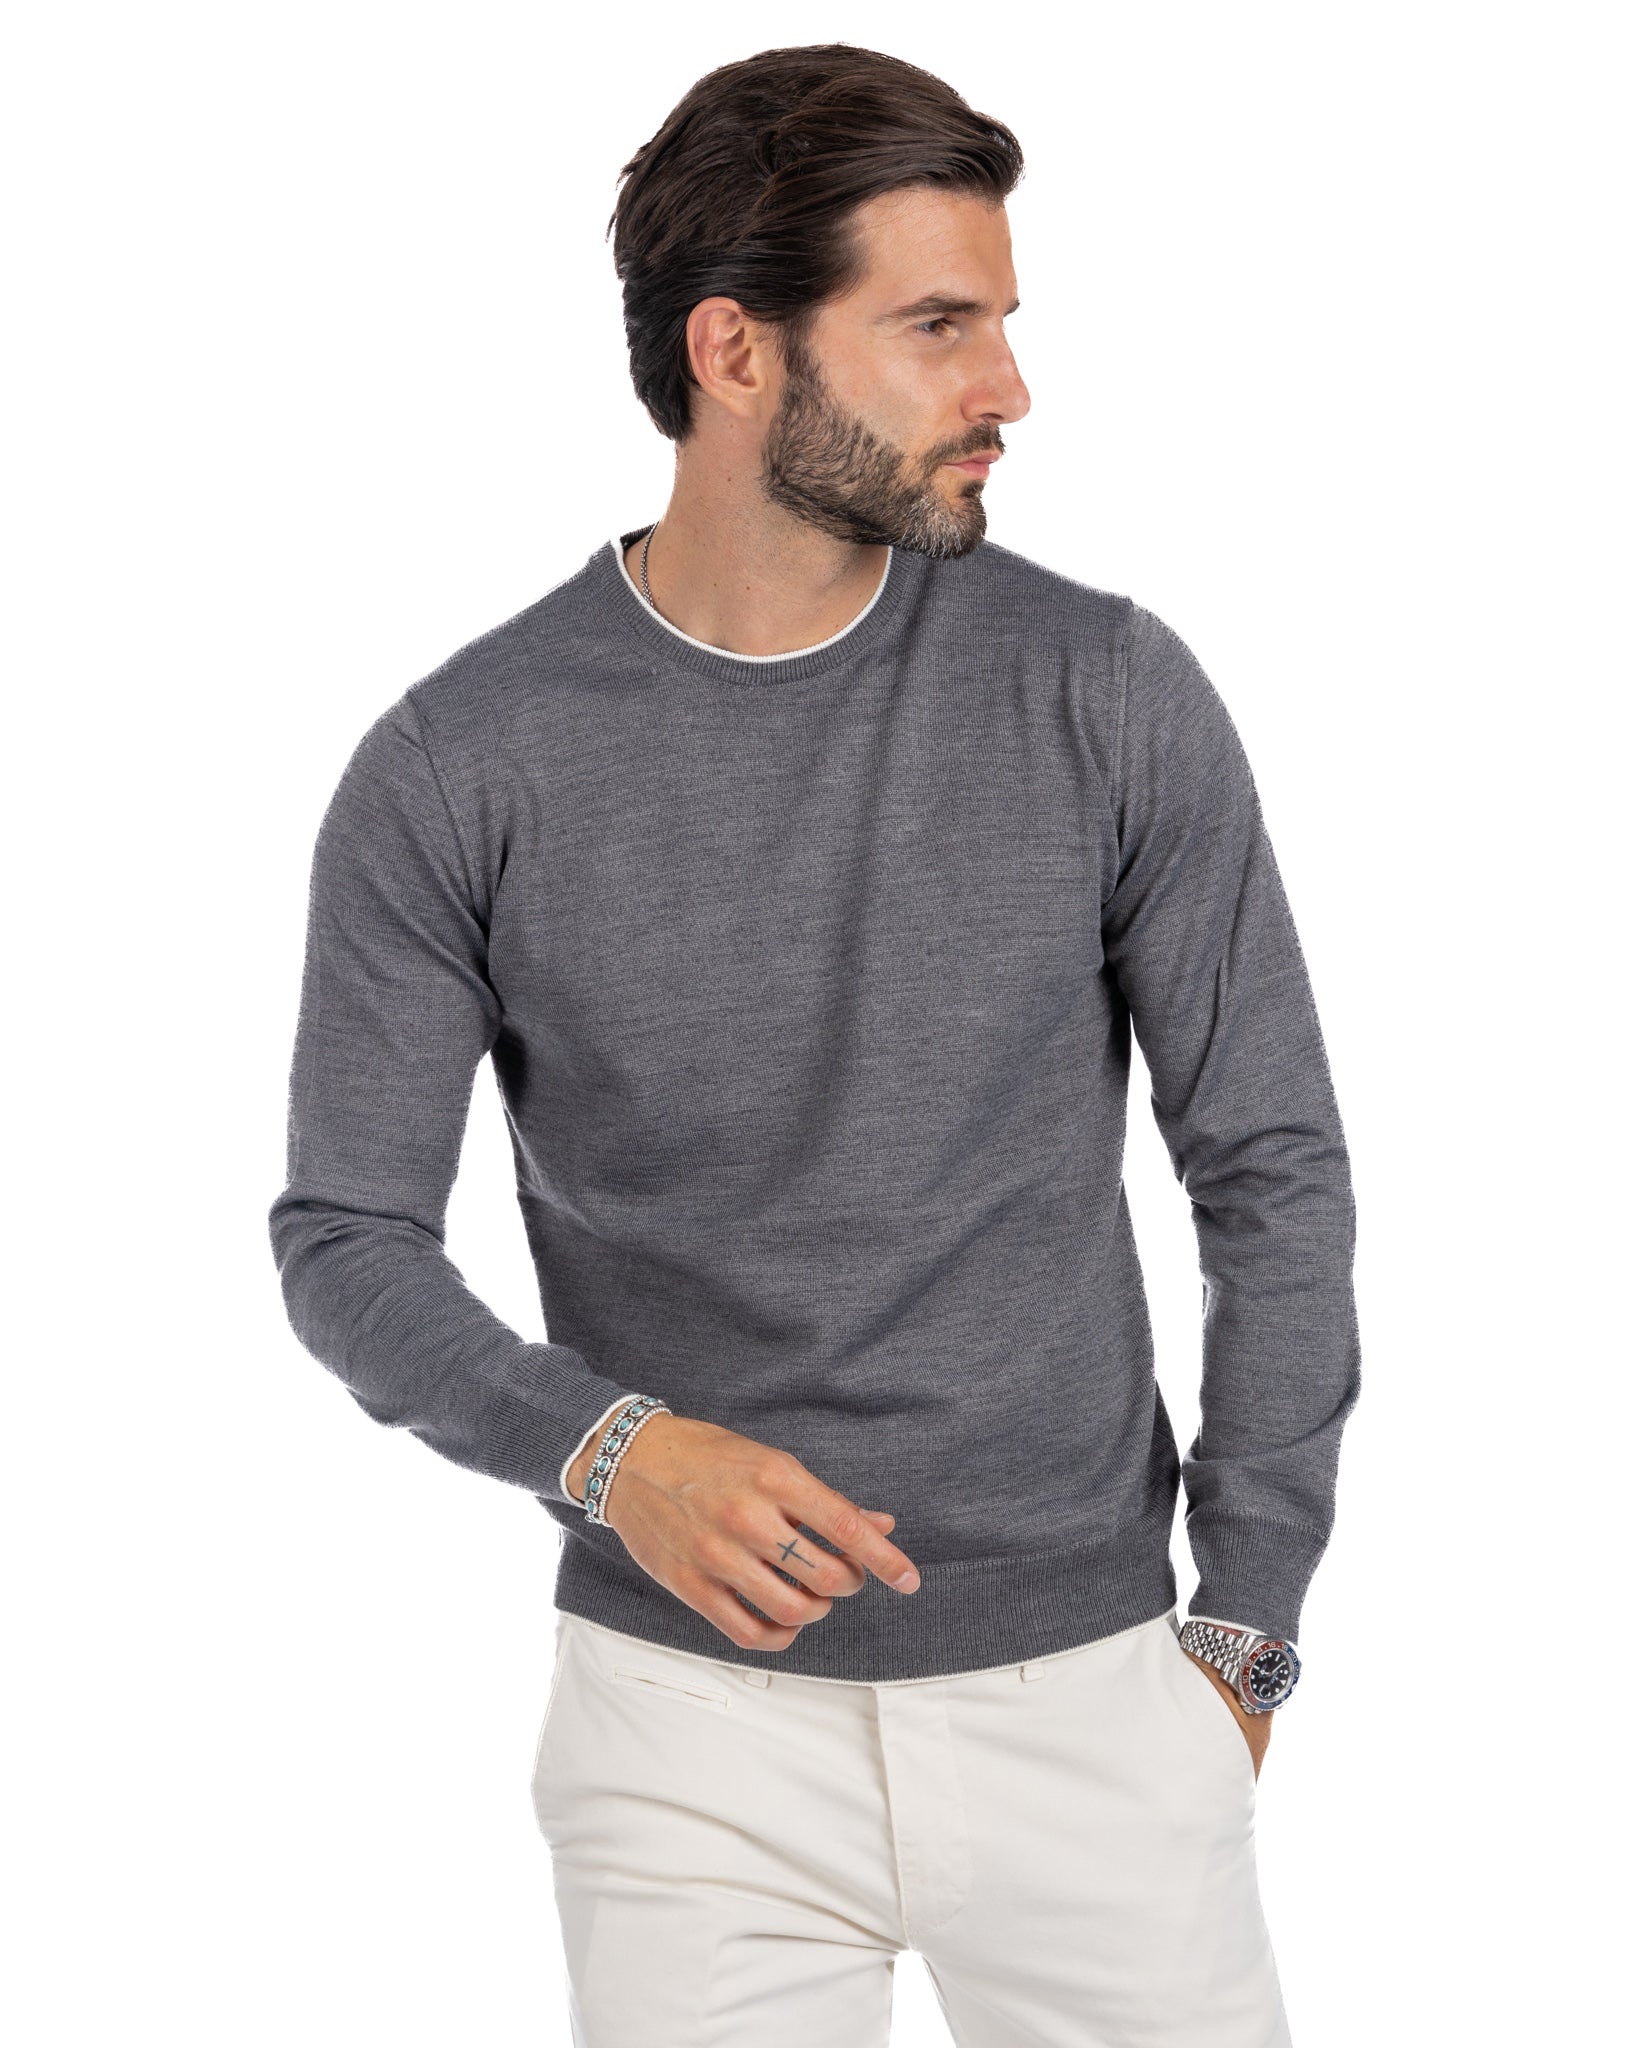 Seve - maglione grigio con bordo bianco